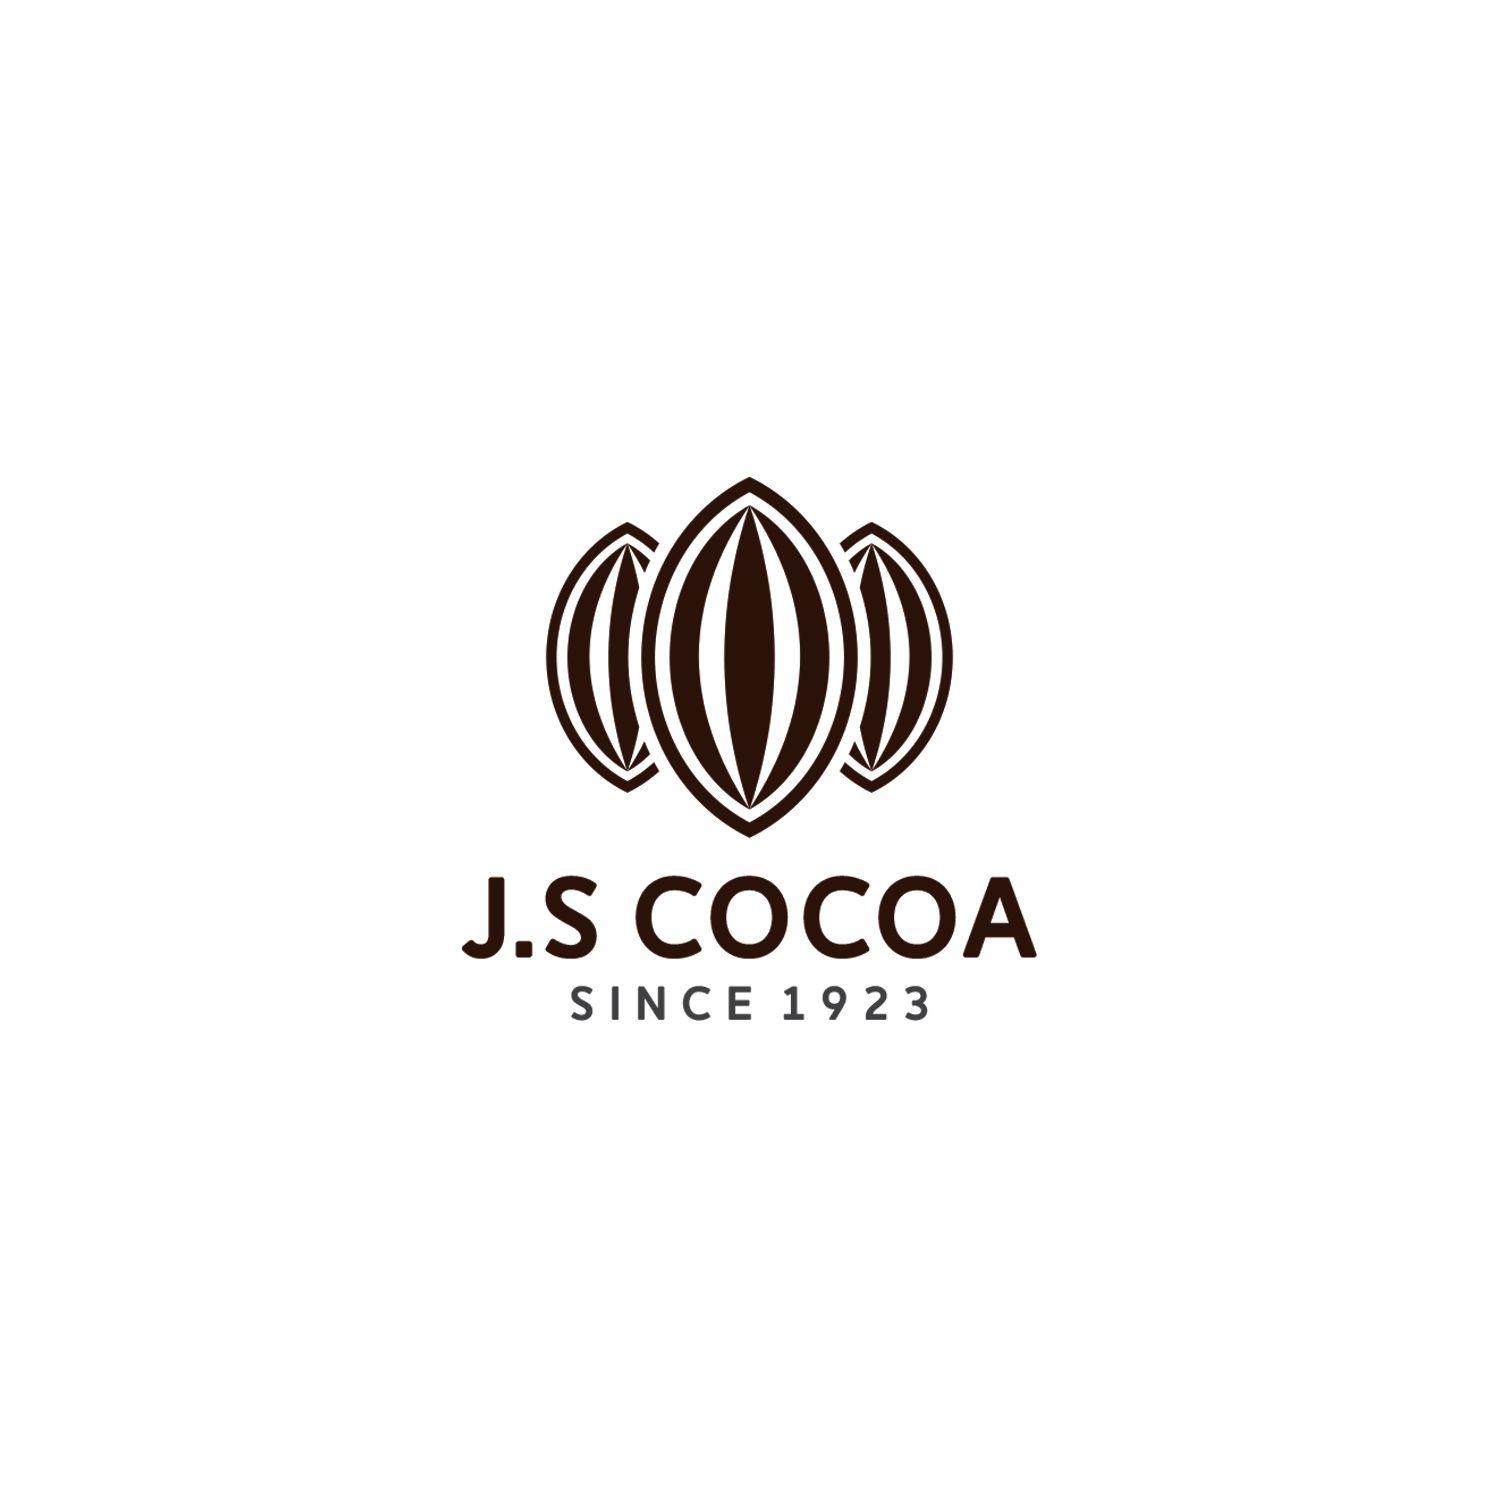 Cocoa Logo - Professional, Masculine, It Company Logo Design for J S Cocoa since ...